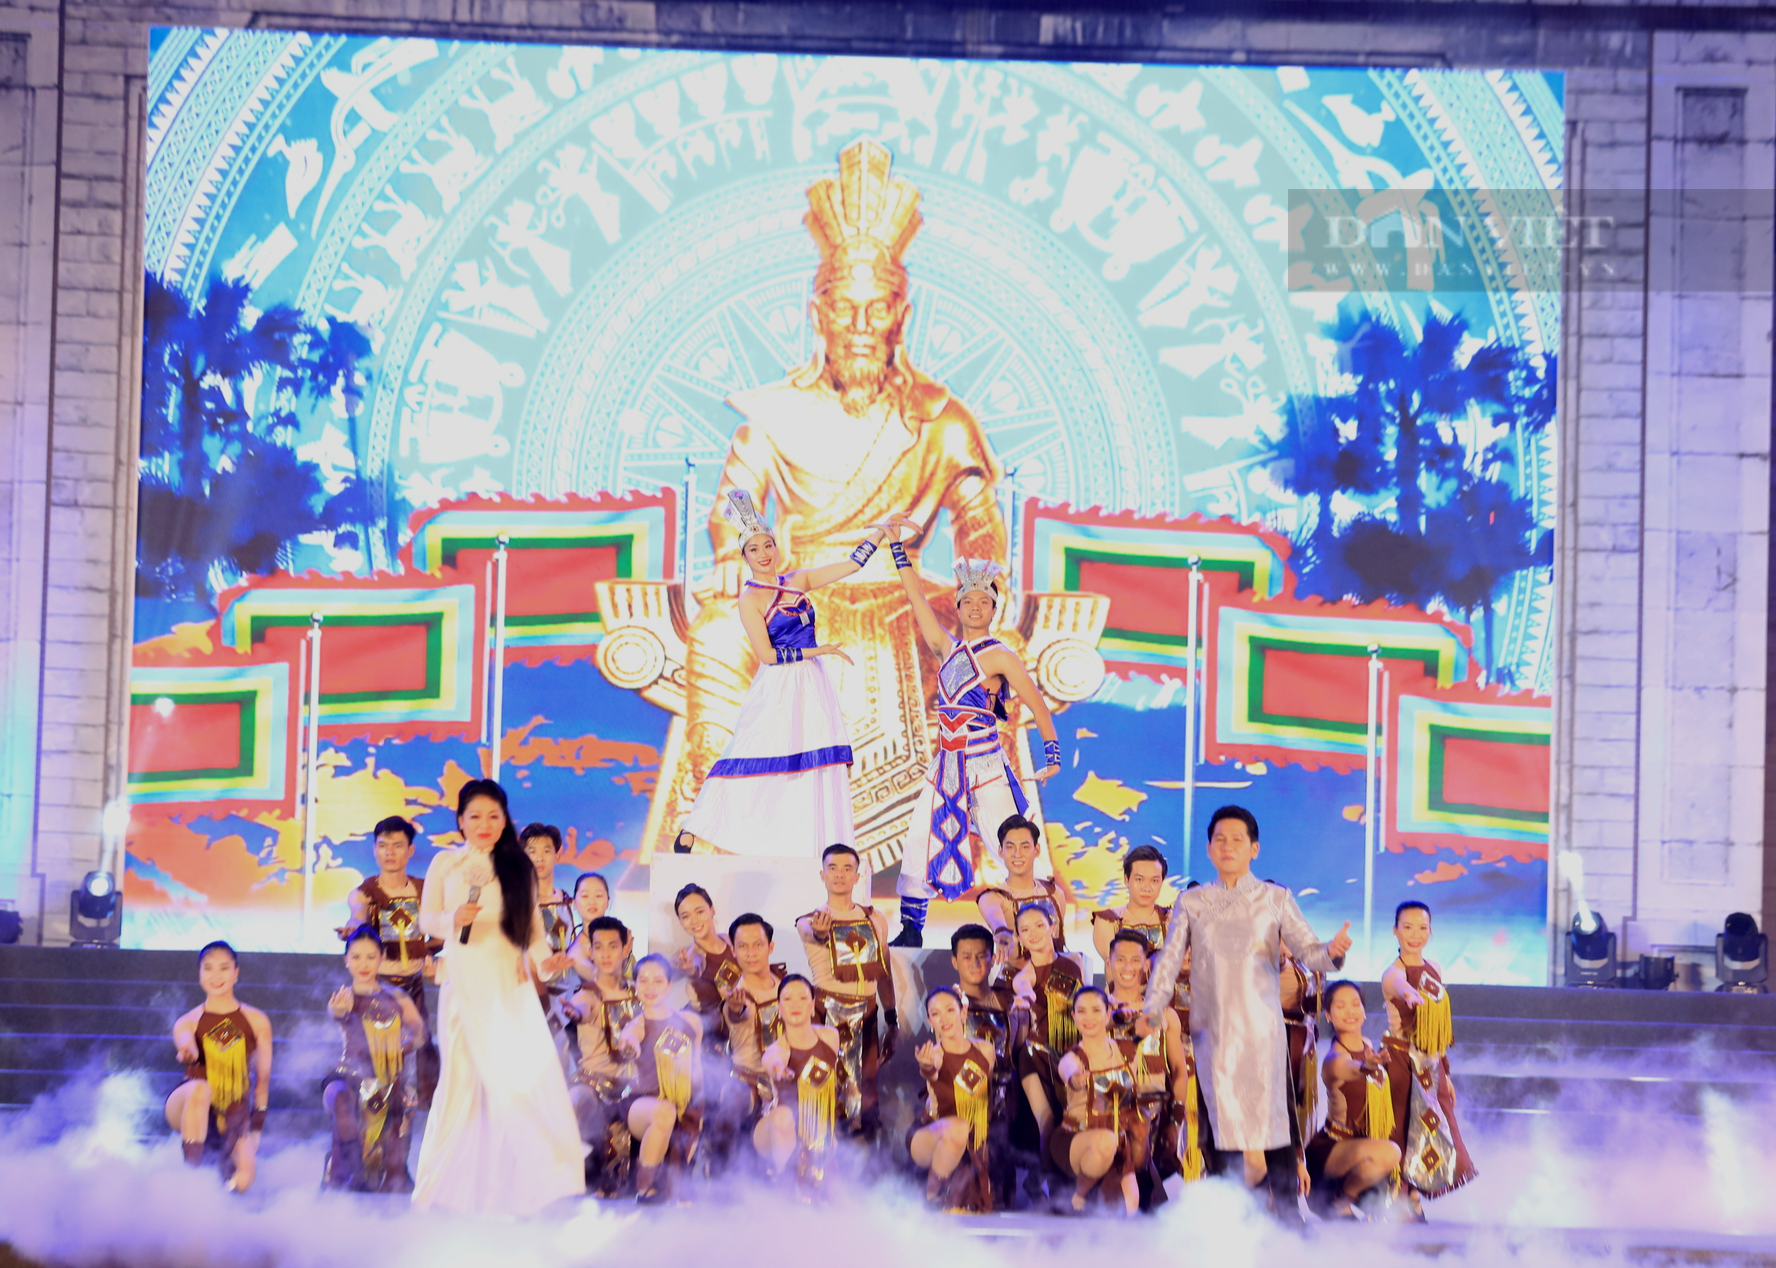 Chương trình khai mạc Lễ hội Đền Hùng thay đổi vào phút cuối, Tổng đạo diễn Lê Thế Song kể chuyện hậu trường - Ảnh 7.